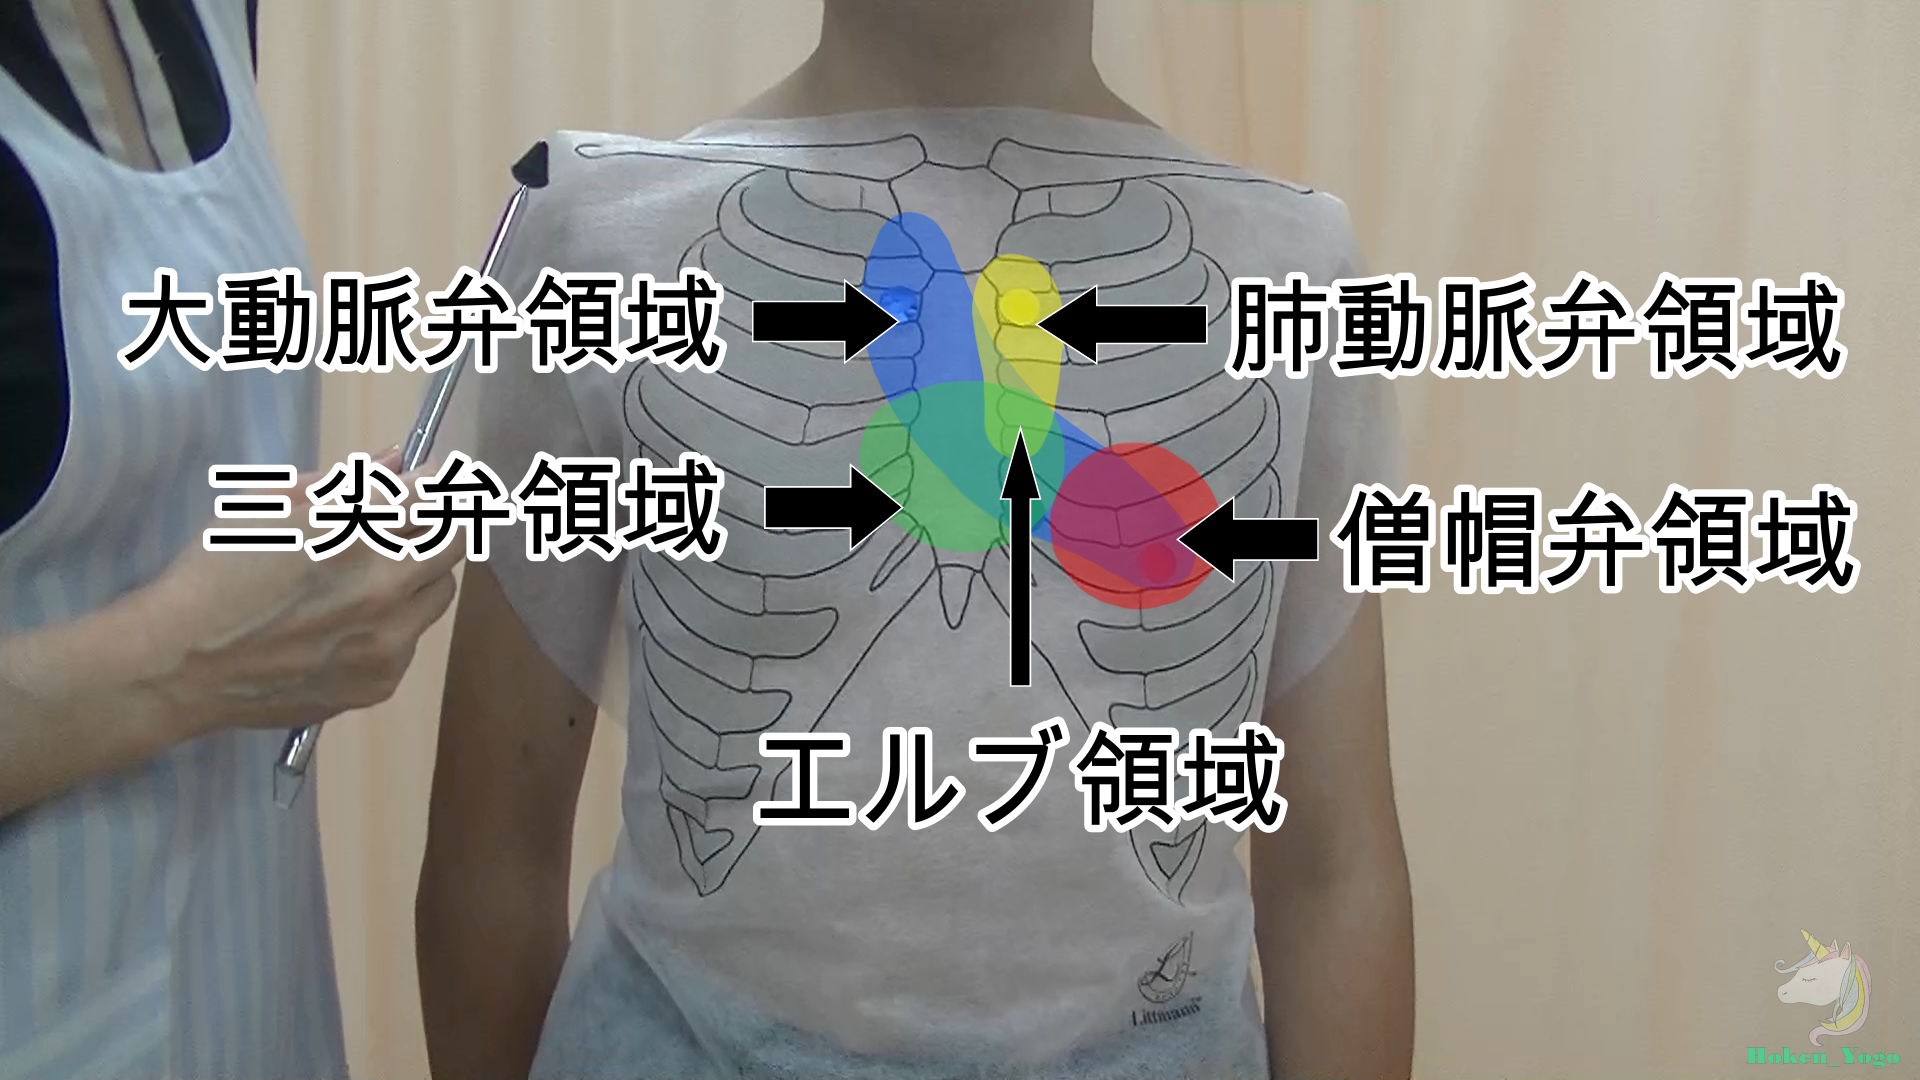 図-胸部循環器-聴診-聴診領域.png